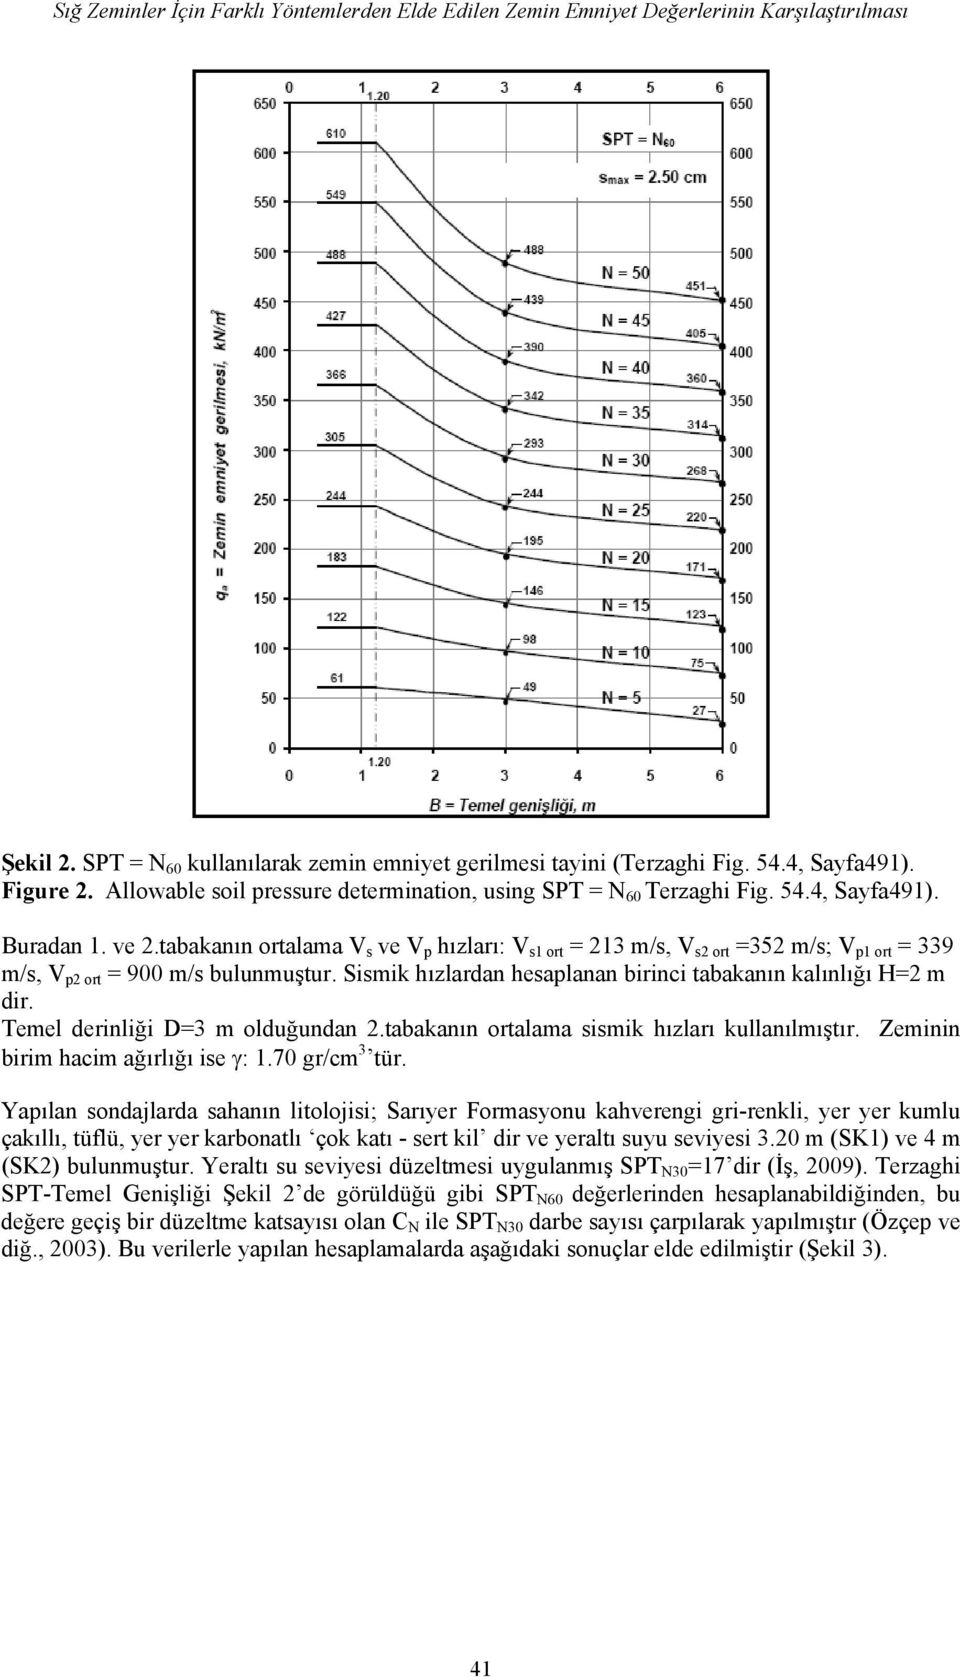 tabakanın ortalama V s ve V p hızları: V s1 ort = 213 m/s, V s2 ort =352 m/s; V p1 ort = 339 m/s, V p2 ort = 900 m/s bulunmuştur. Sismik hızlardan hesaplanan birinci tabakanın kalınlığı H=2 m dir.